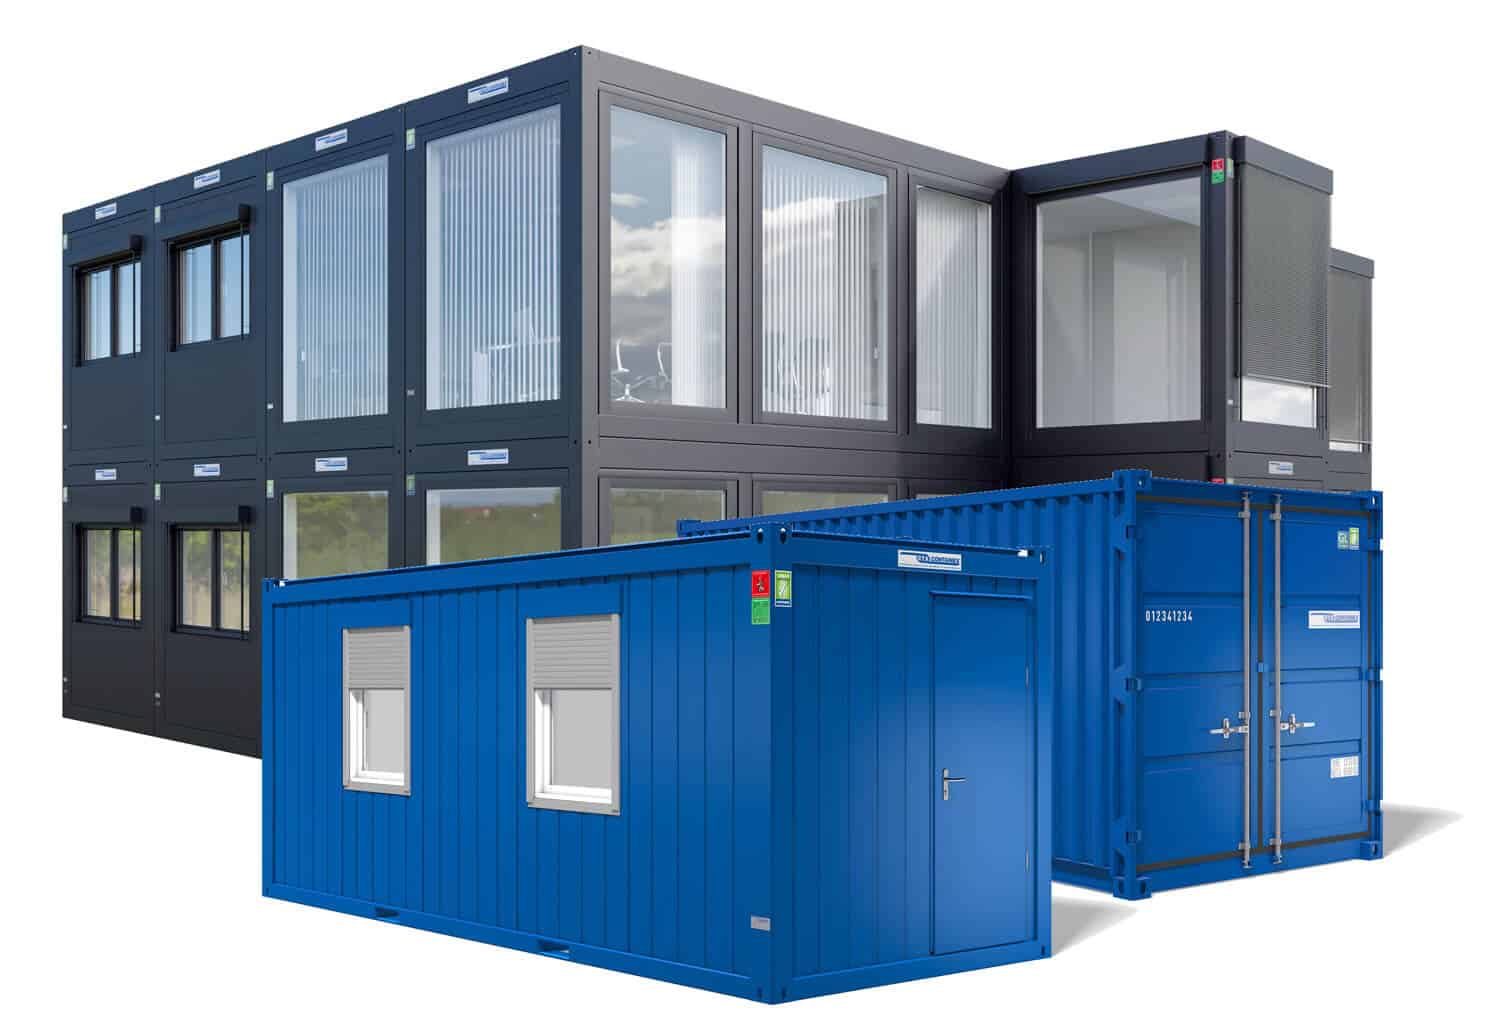 ABS intec - Technikcontainer Plus Line Anlage Buercontainer Lagercontainer Containex - Bürocontainer und Lagercontainer Übersicht